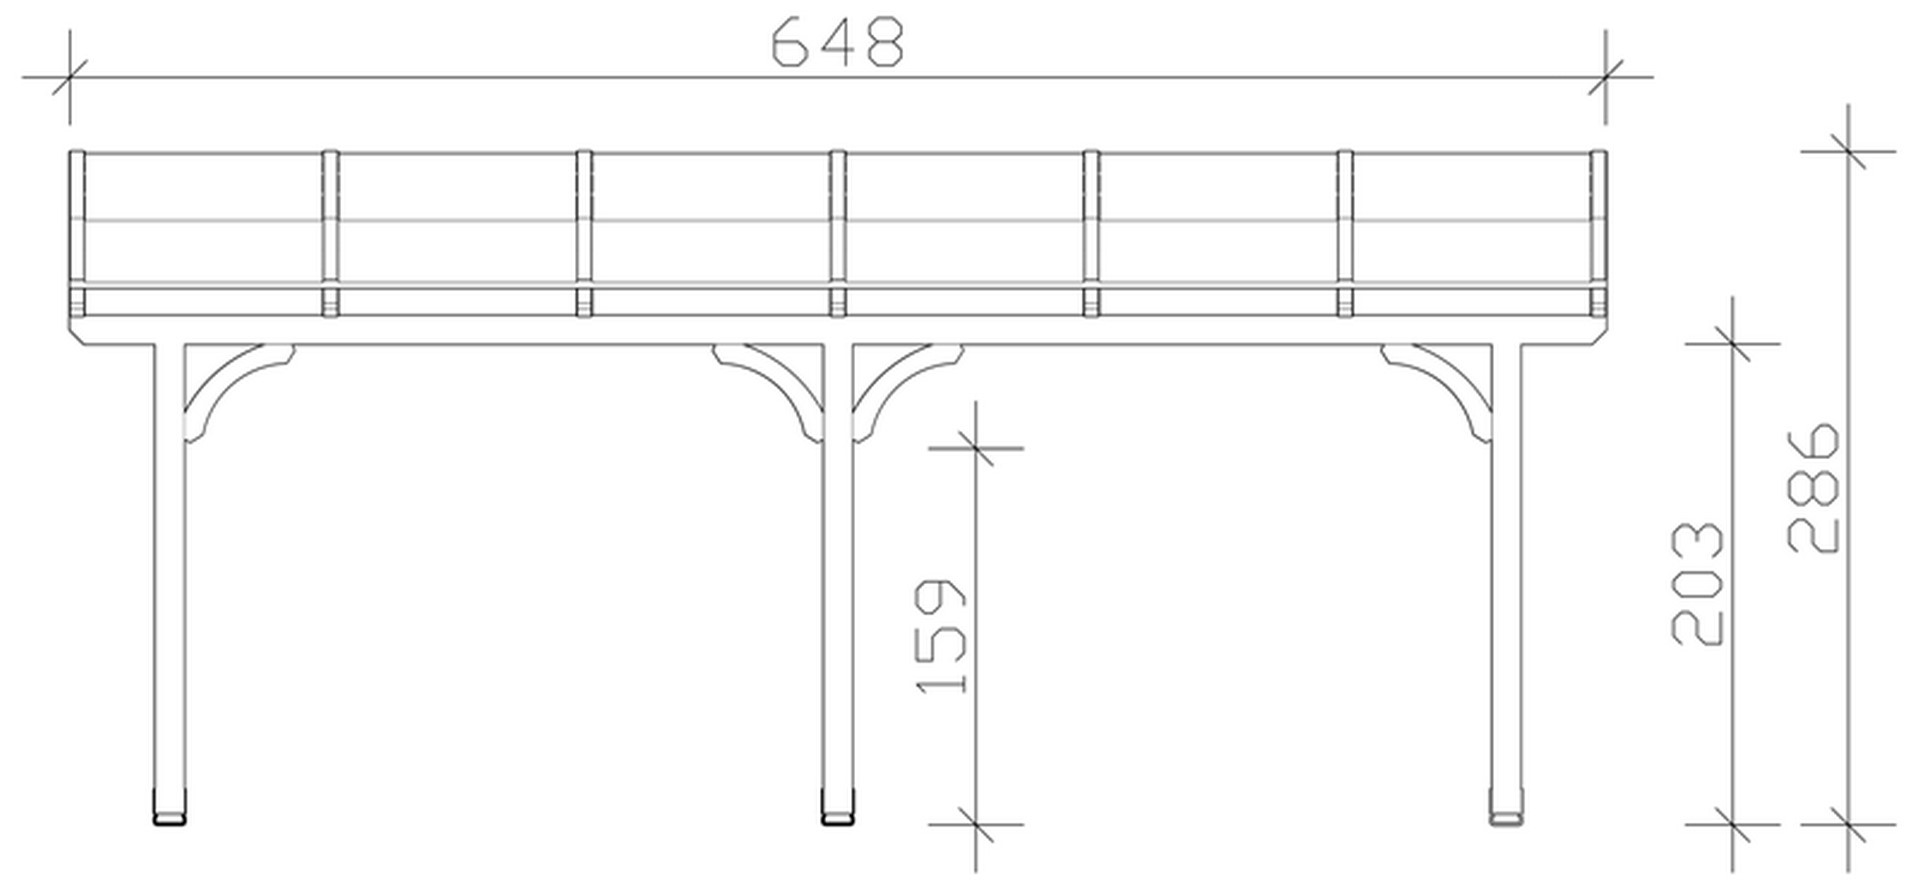 Skan Holz Terrassenüberdachung Venezia 648 x 289 cm, Leimholz, Doppelstegplatten